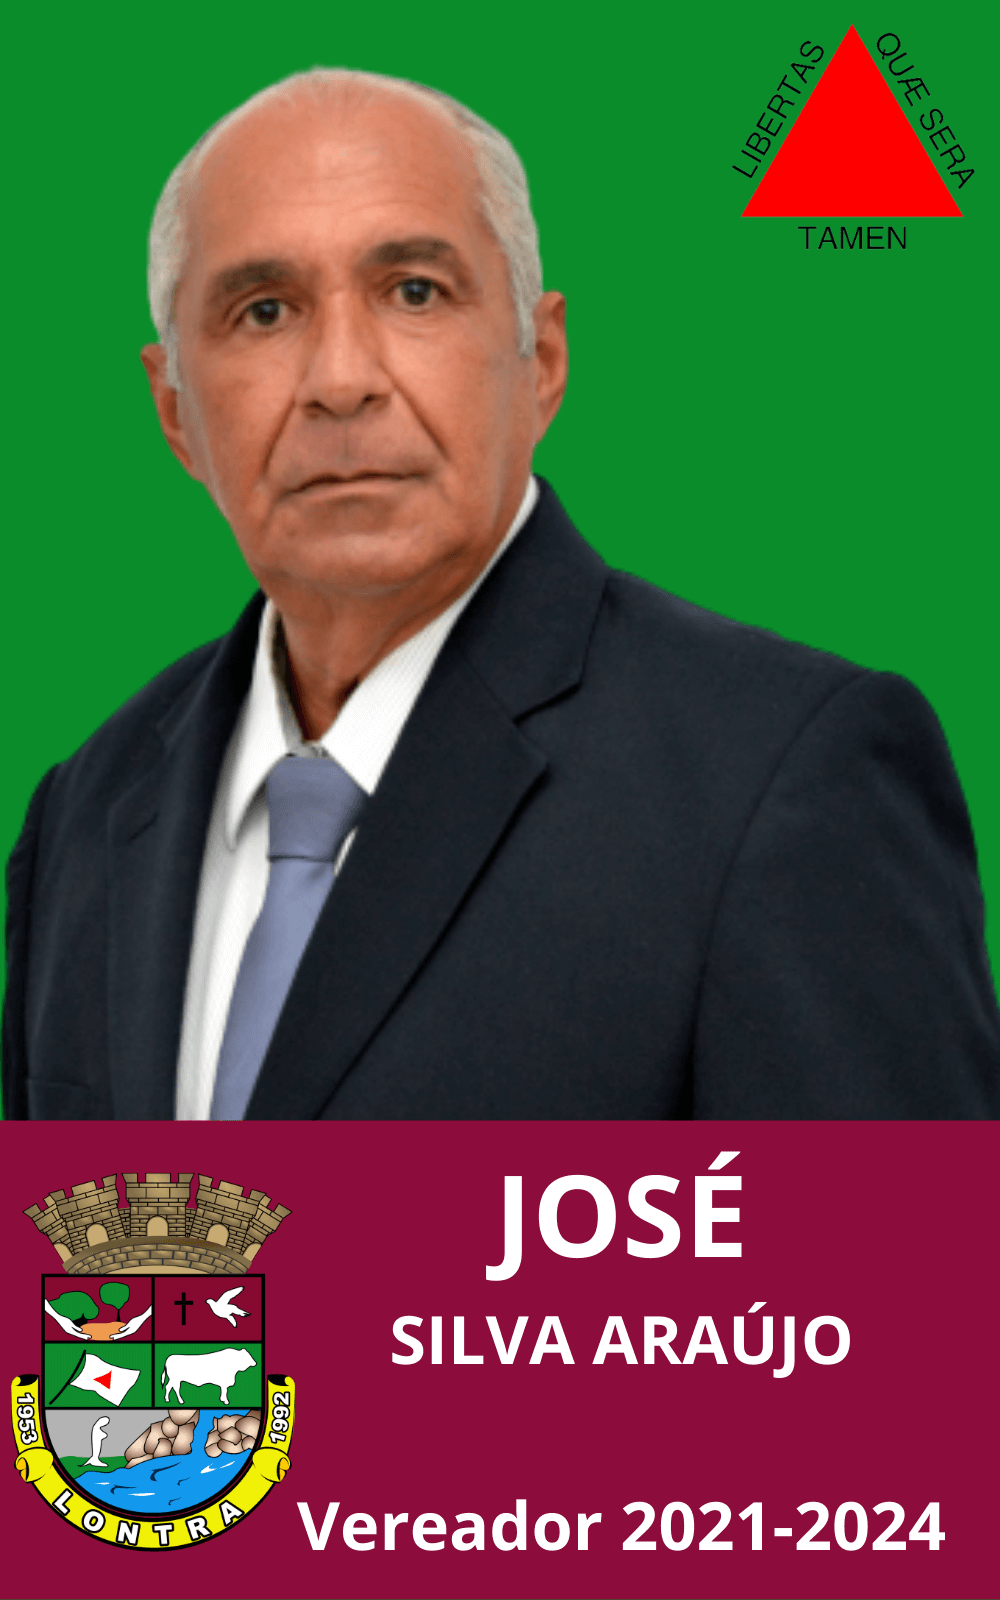 José Silva Araújo